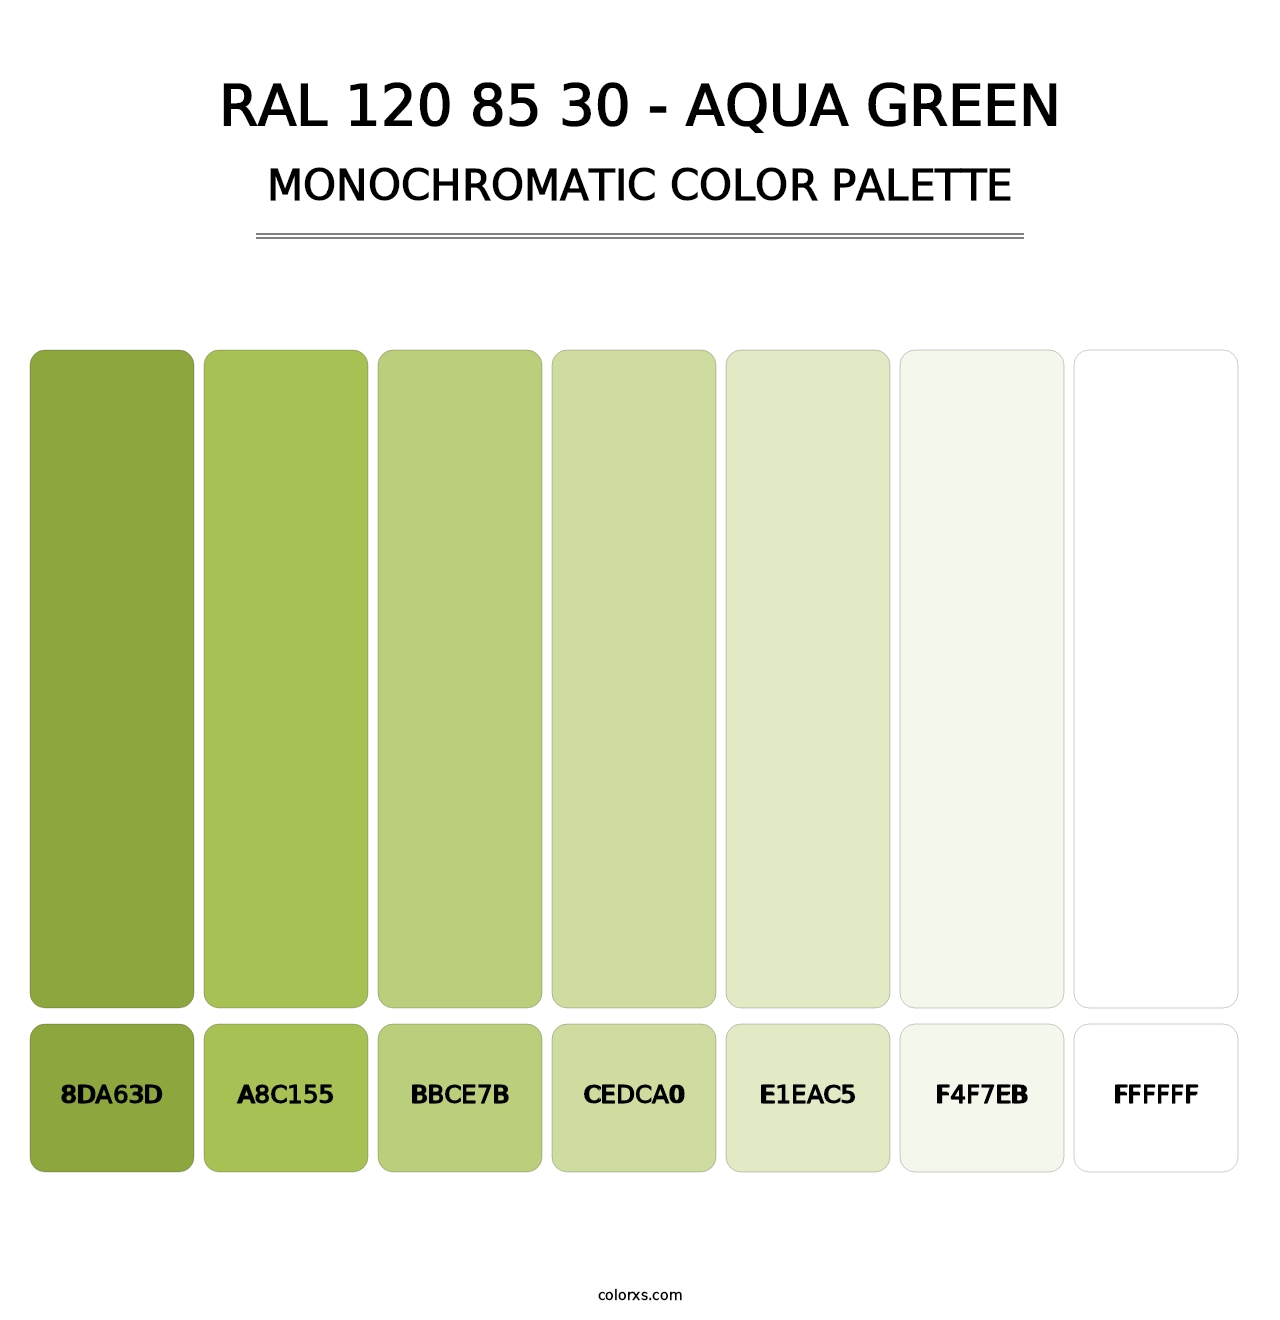 RAL 120 85 30 - Aqua Green - Monochromatic Color Palette